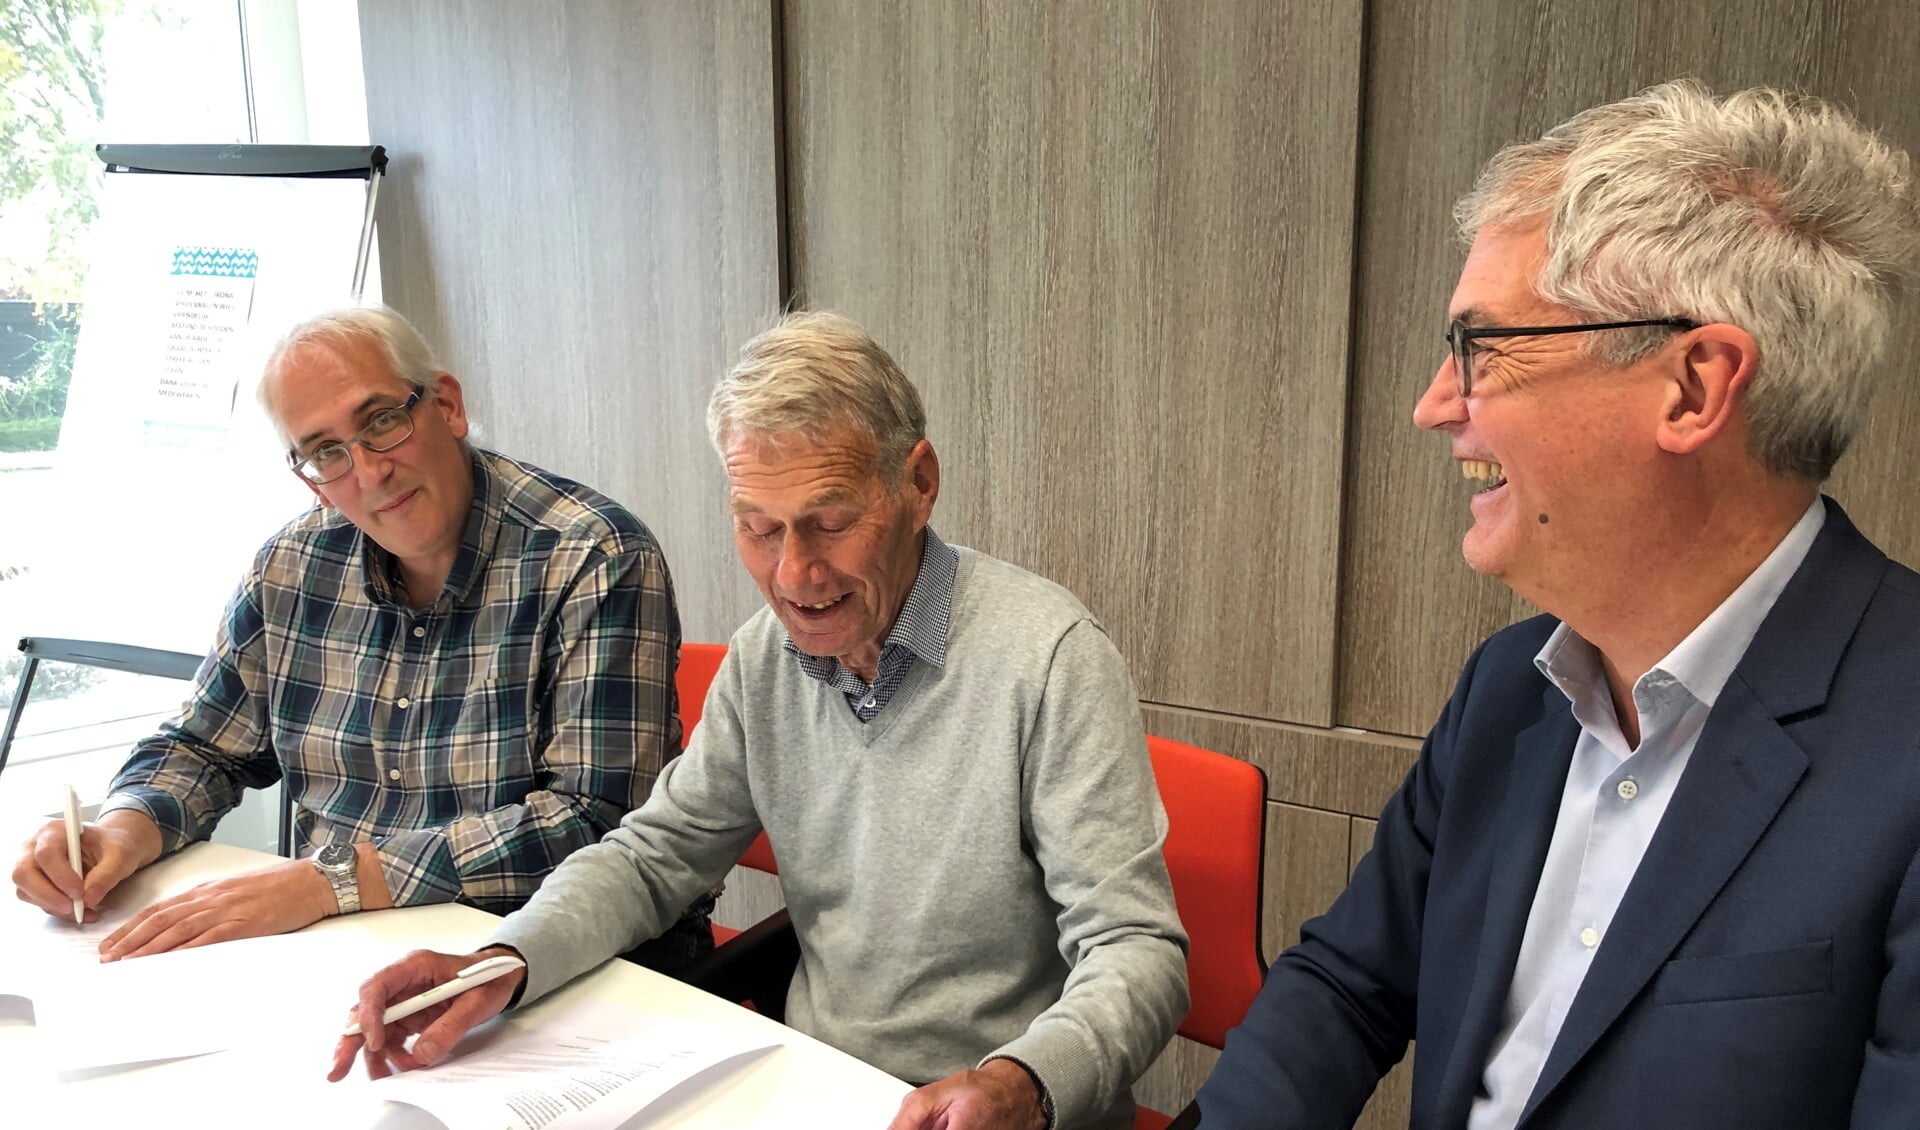 Ondertekening samenwerkingsovereenkomst door: vlnr bestuursleden Quackenbosch Joan Tacx en Dammes van der Poel directeur Peter Hoogvliet van MeerWonen.